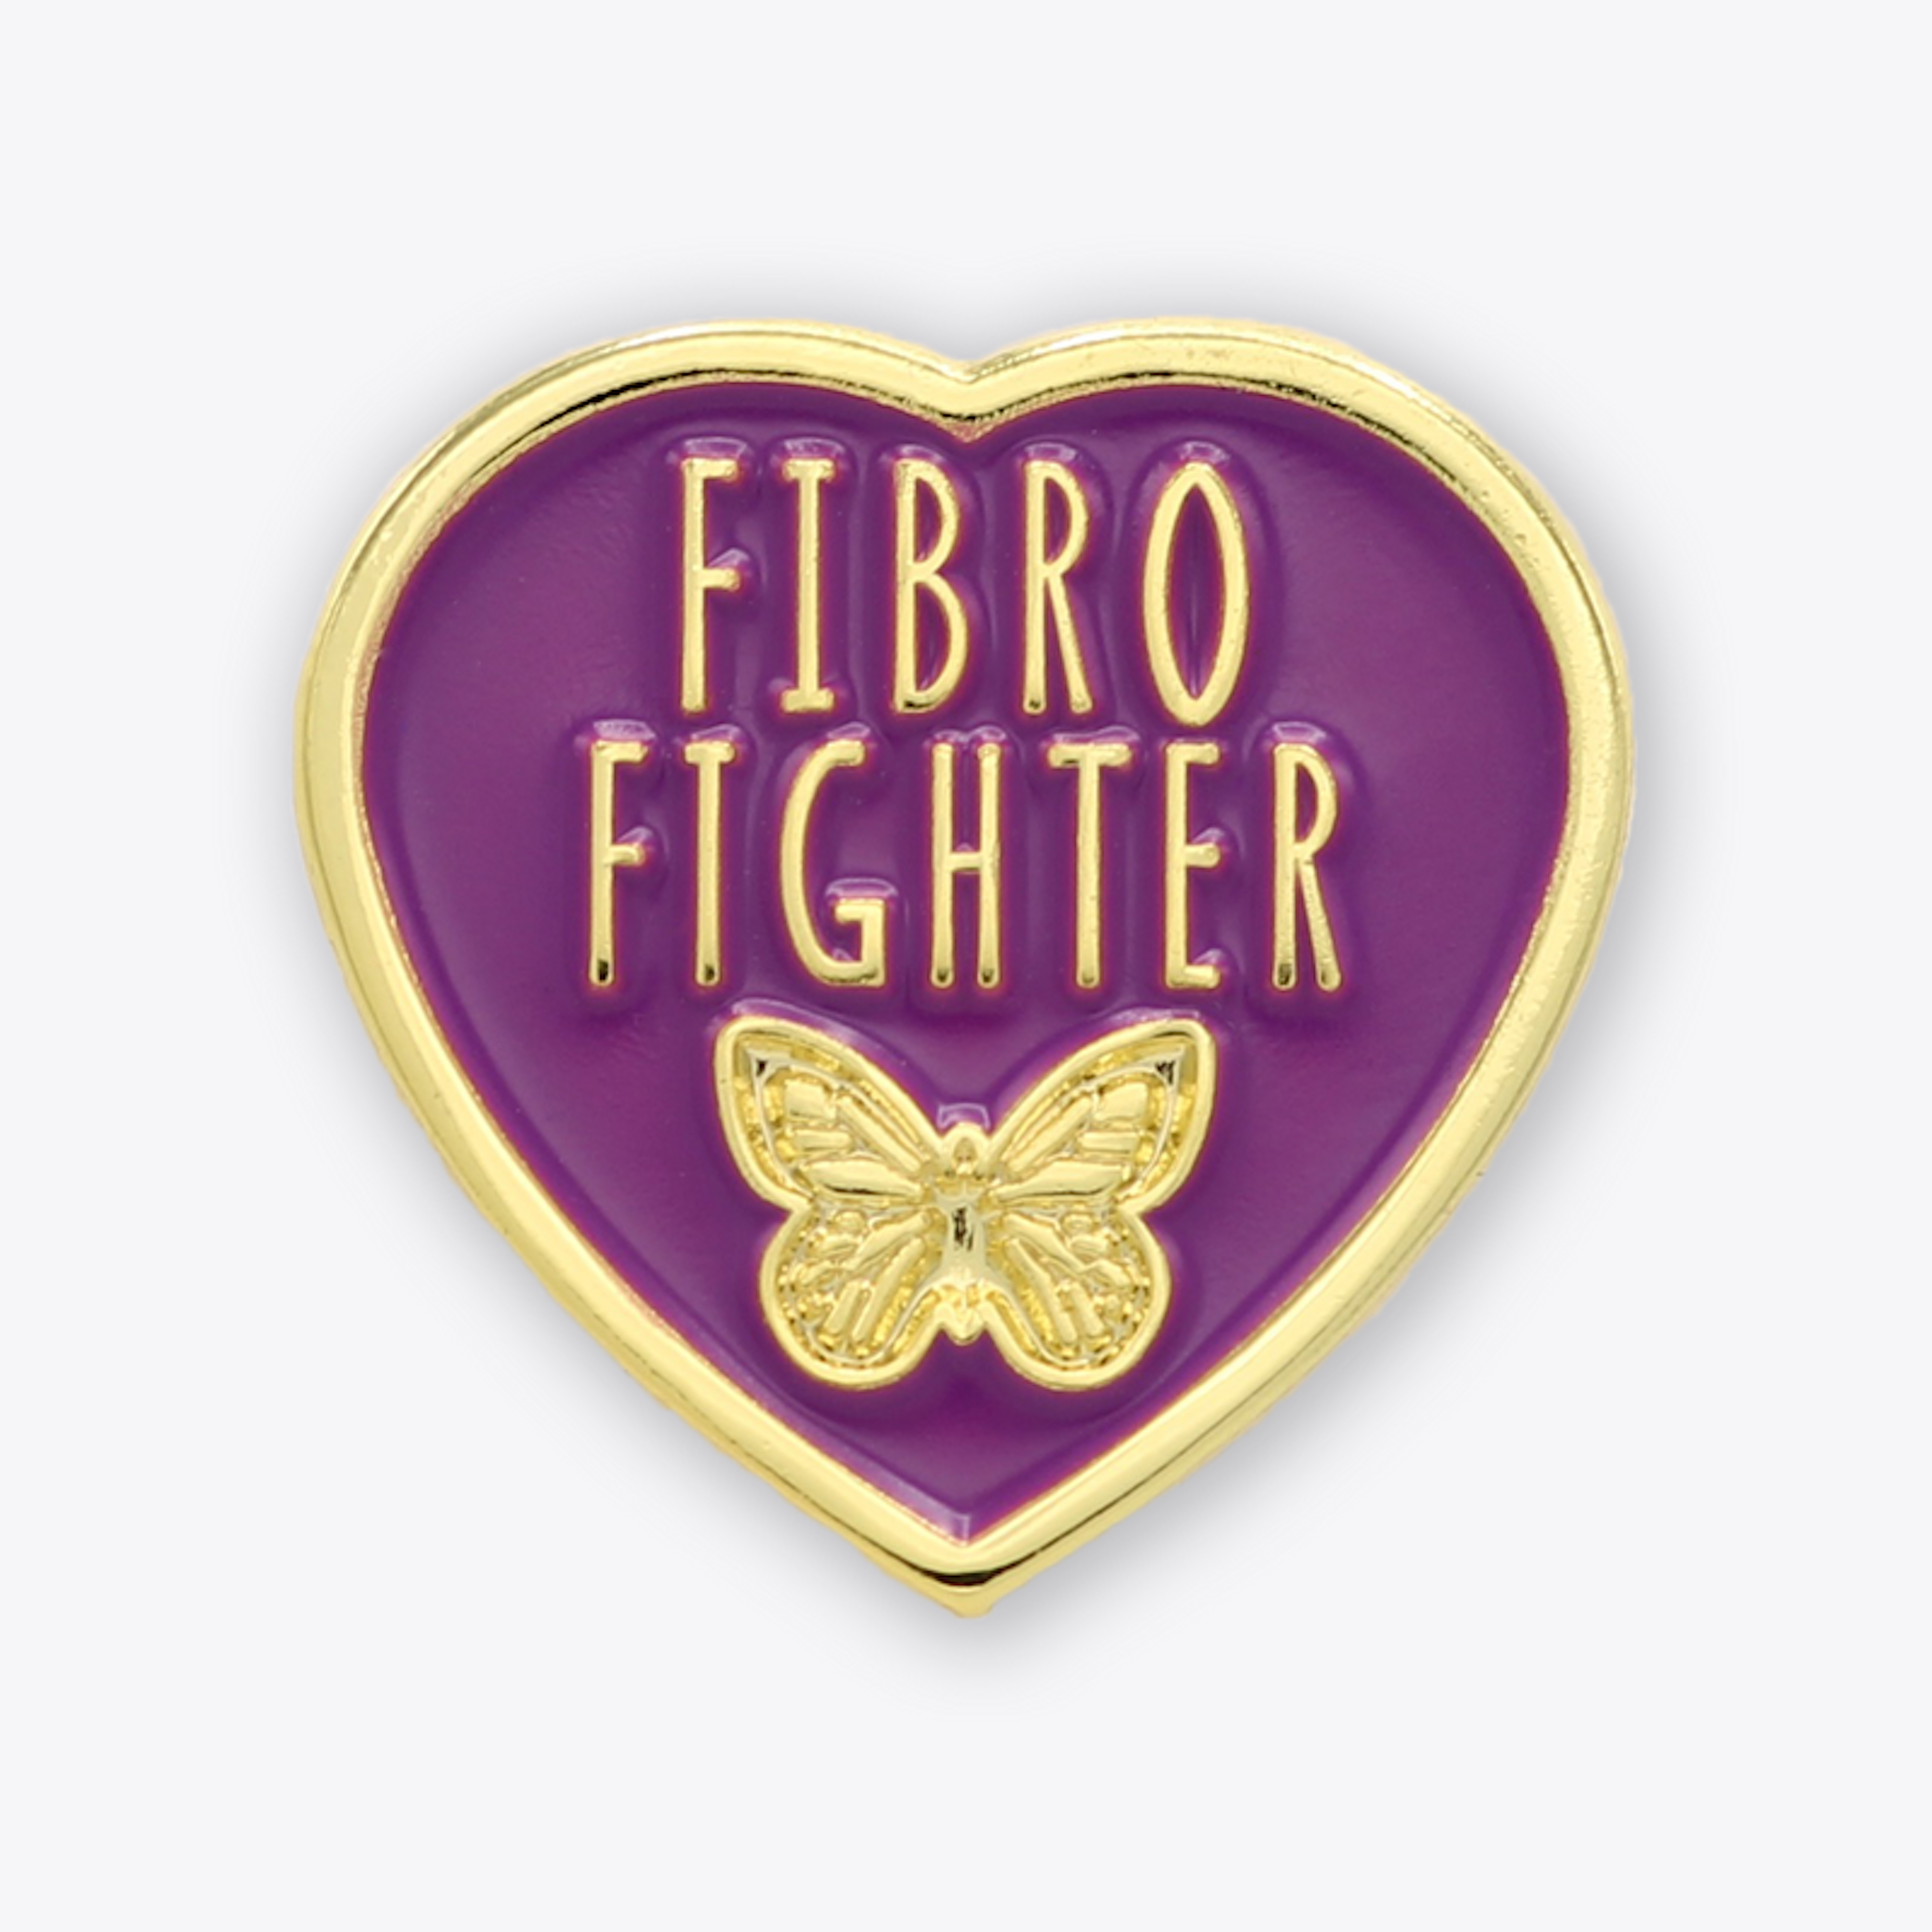 Fibro fighter lapel pin